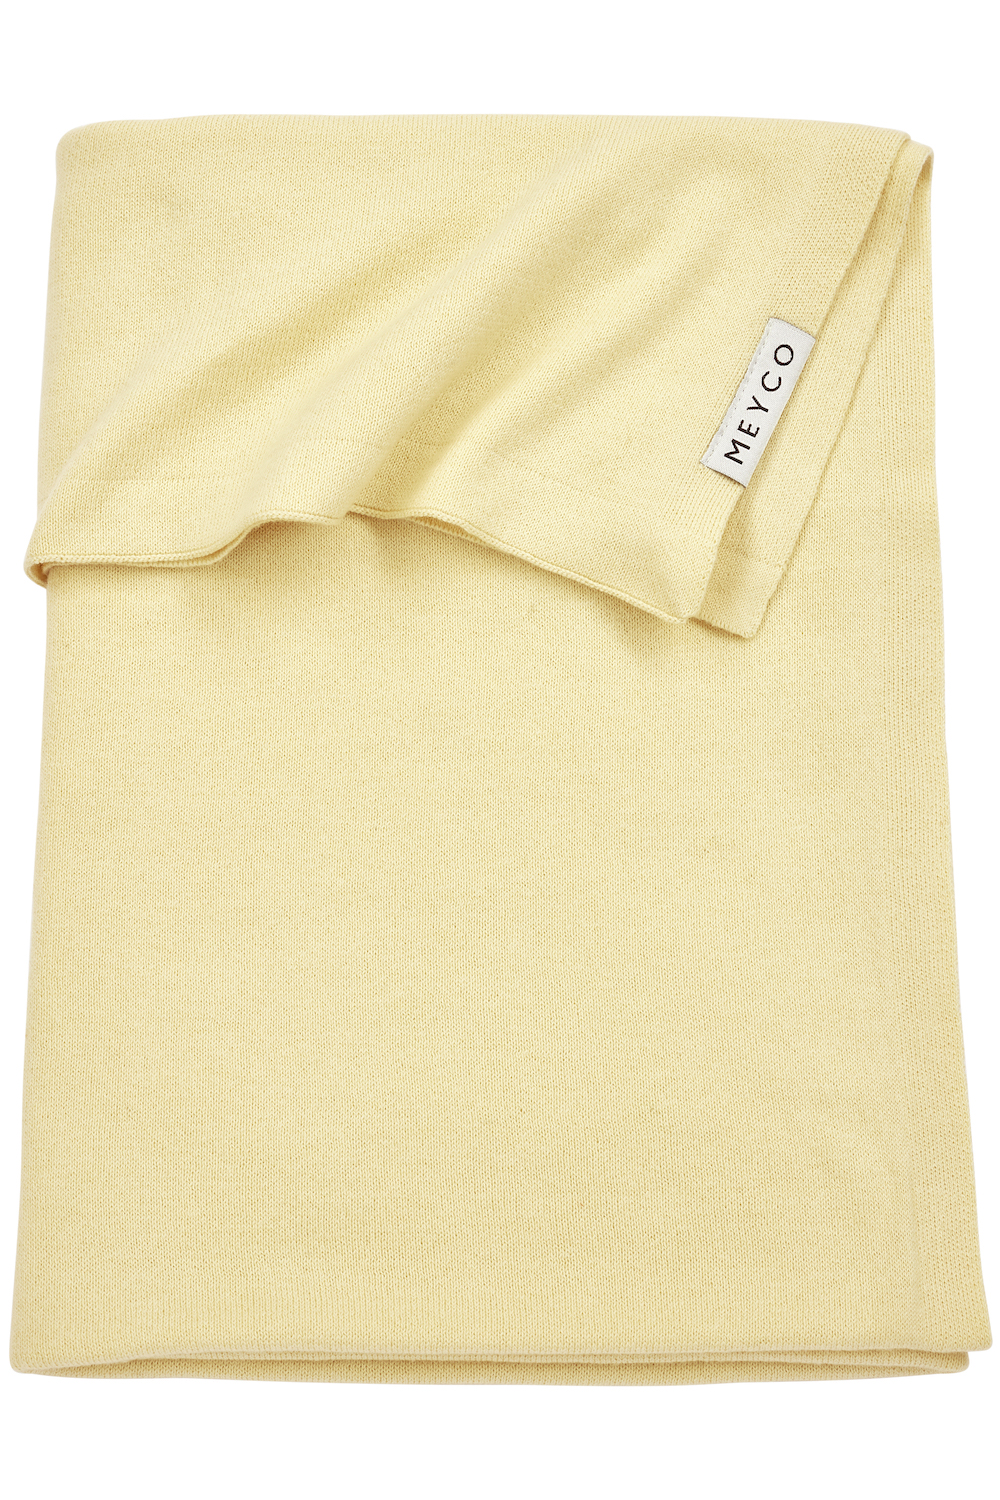 Baydecke Klein Knit Basic - Soft Yellow - 75x100cm